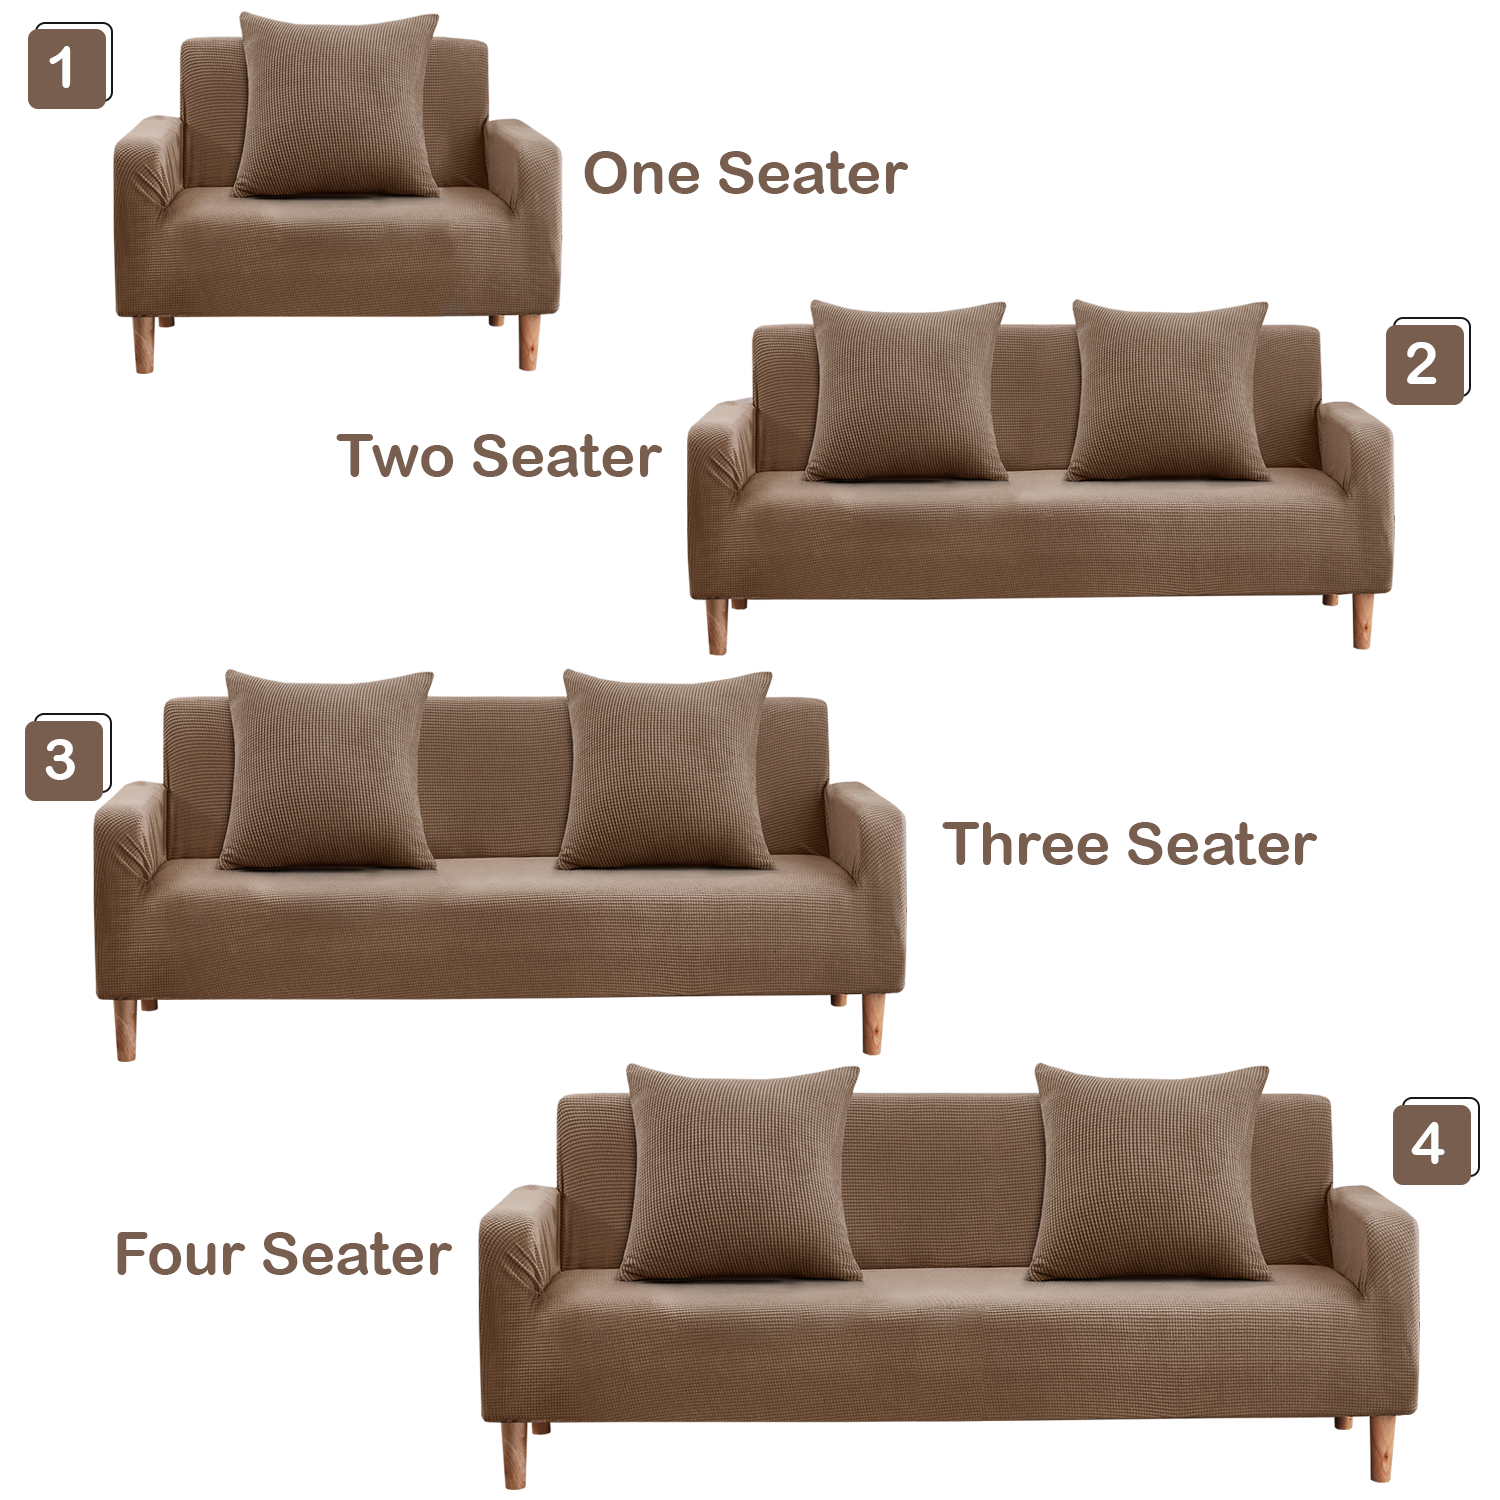 JOBLOT Velvet Sofa Covers 4 sizes Brown Stretch Slipcover 50pcs